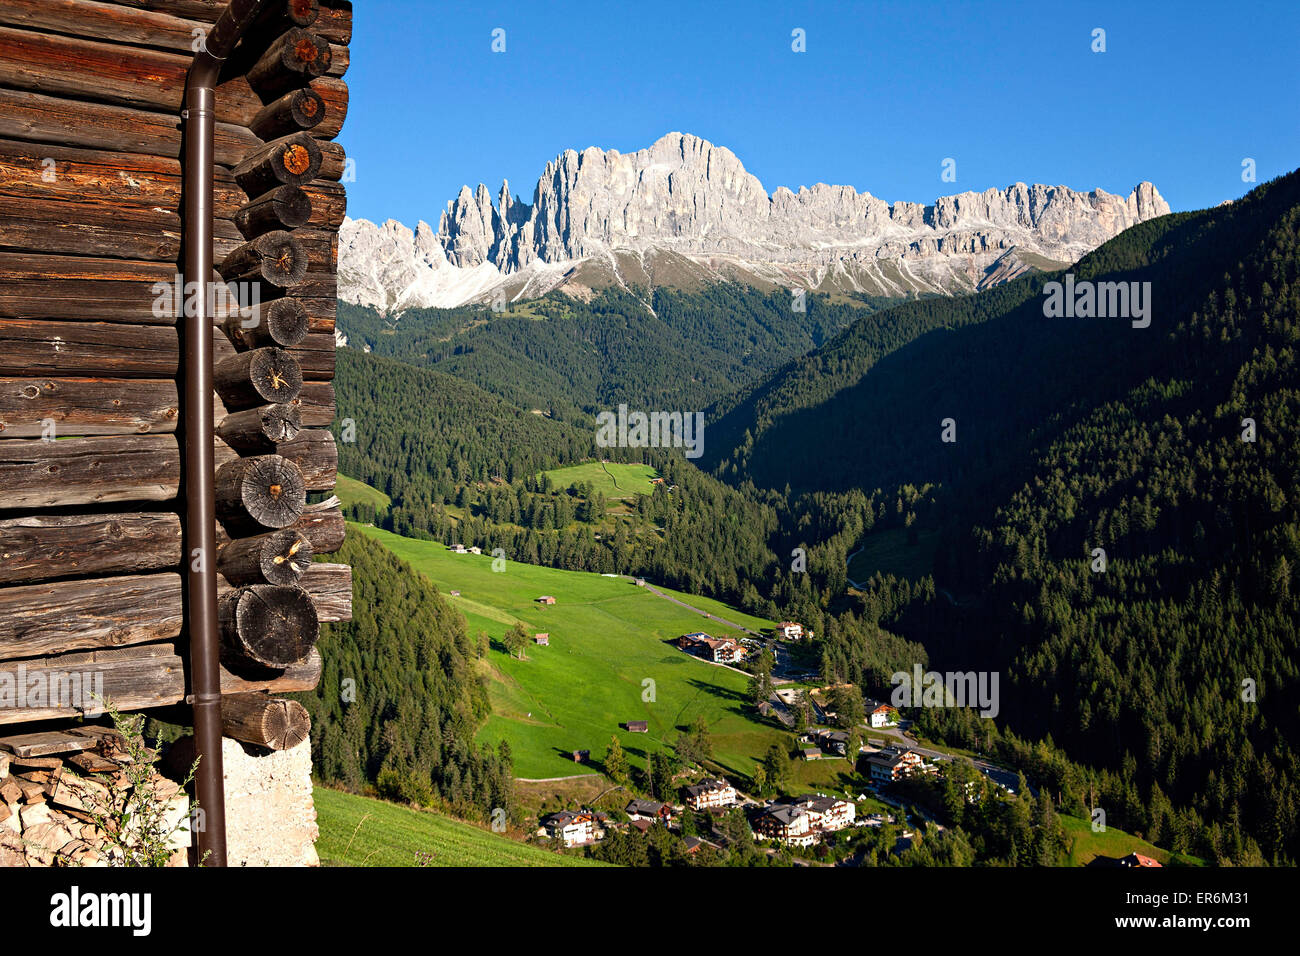 Giardino delle Rose gruppo di montagna con il lato della baita in legno, livelli,pneumatici, Alto Adige, Alto Adige, Italia Foto Stock